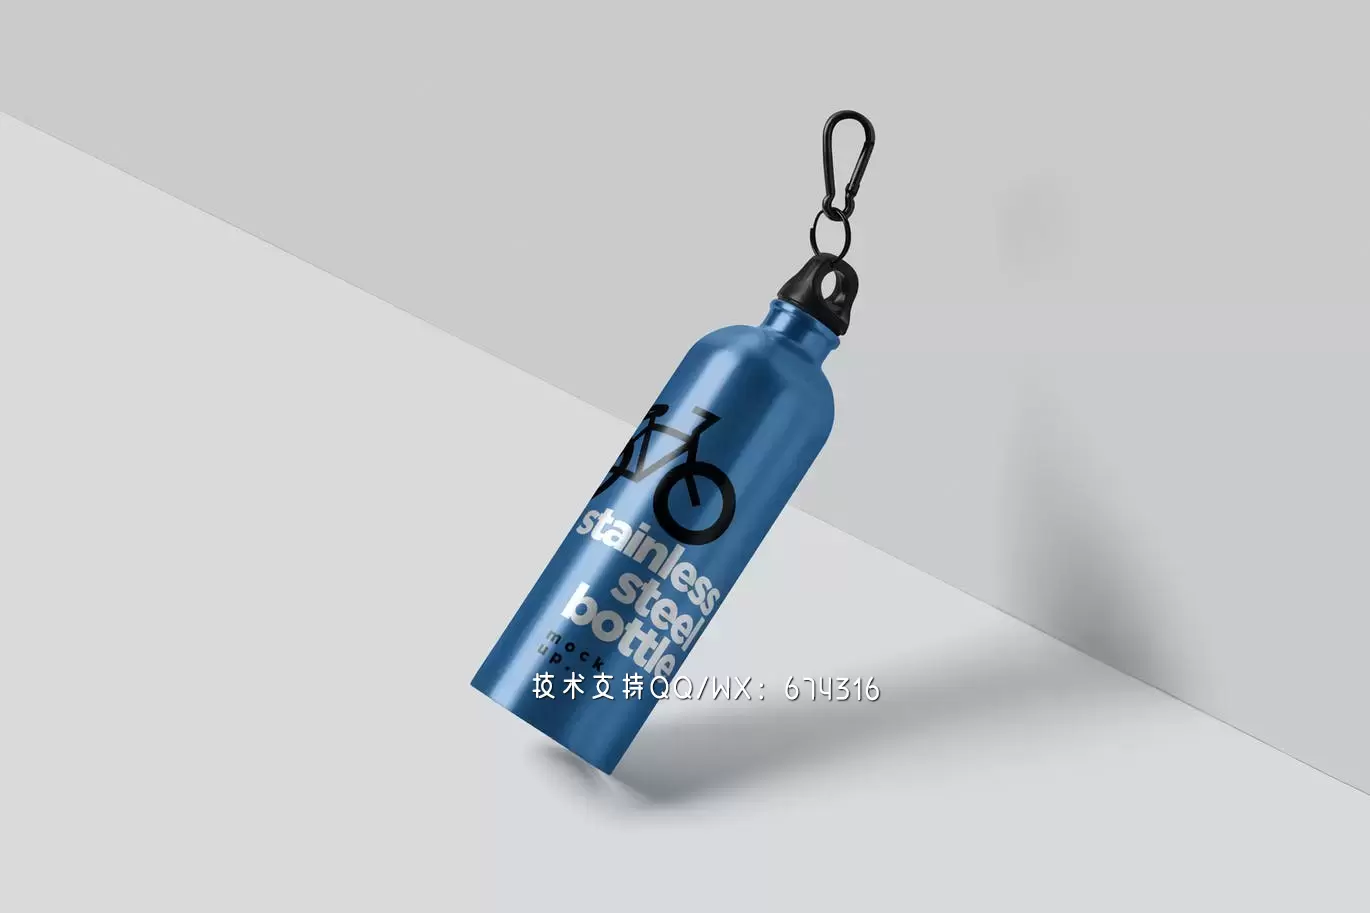 时尚高端高品质的热水瓶包装设计VI样机展示模型mockups免费下载插图